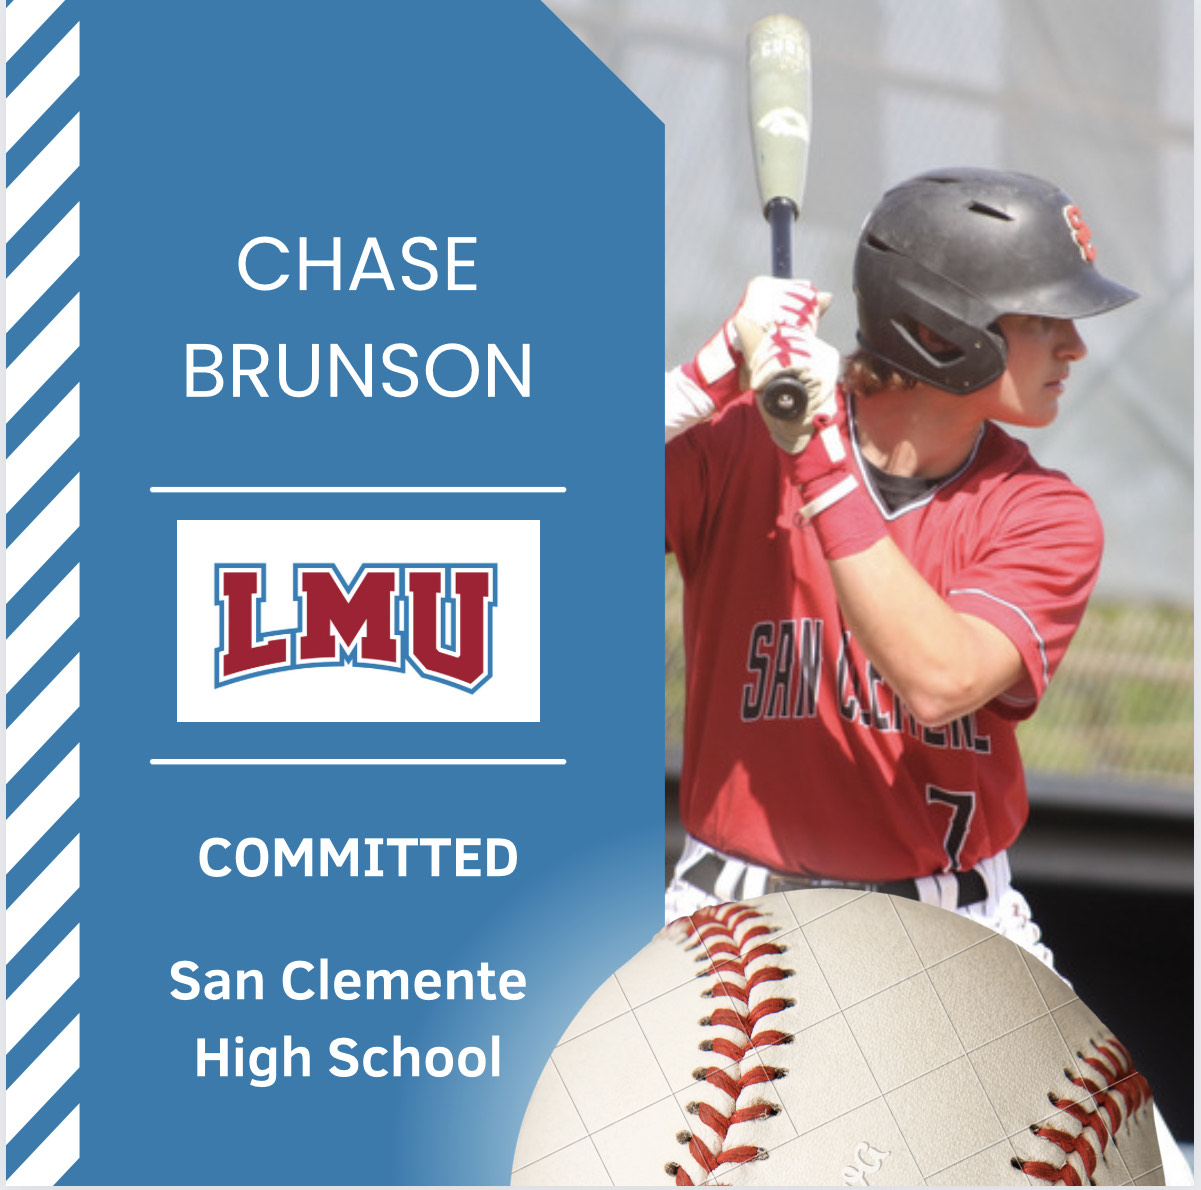 Chase Brunson Athlete Recruiting Story – Committed to Loyola Marymount University